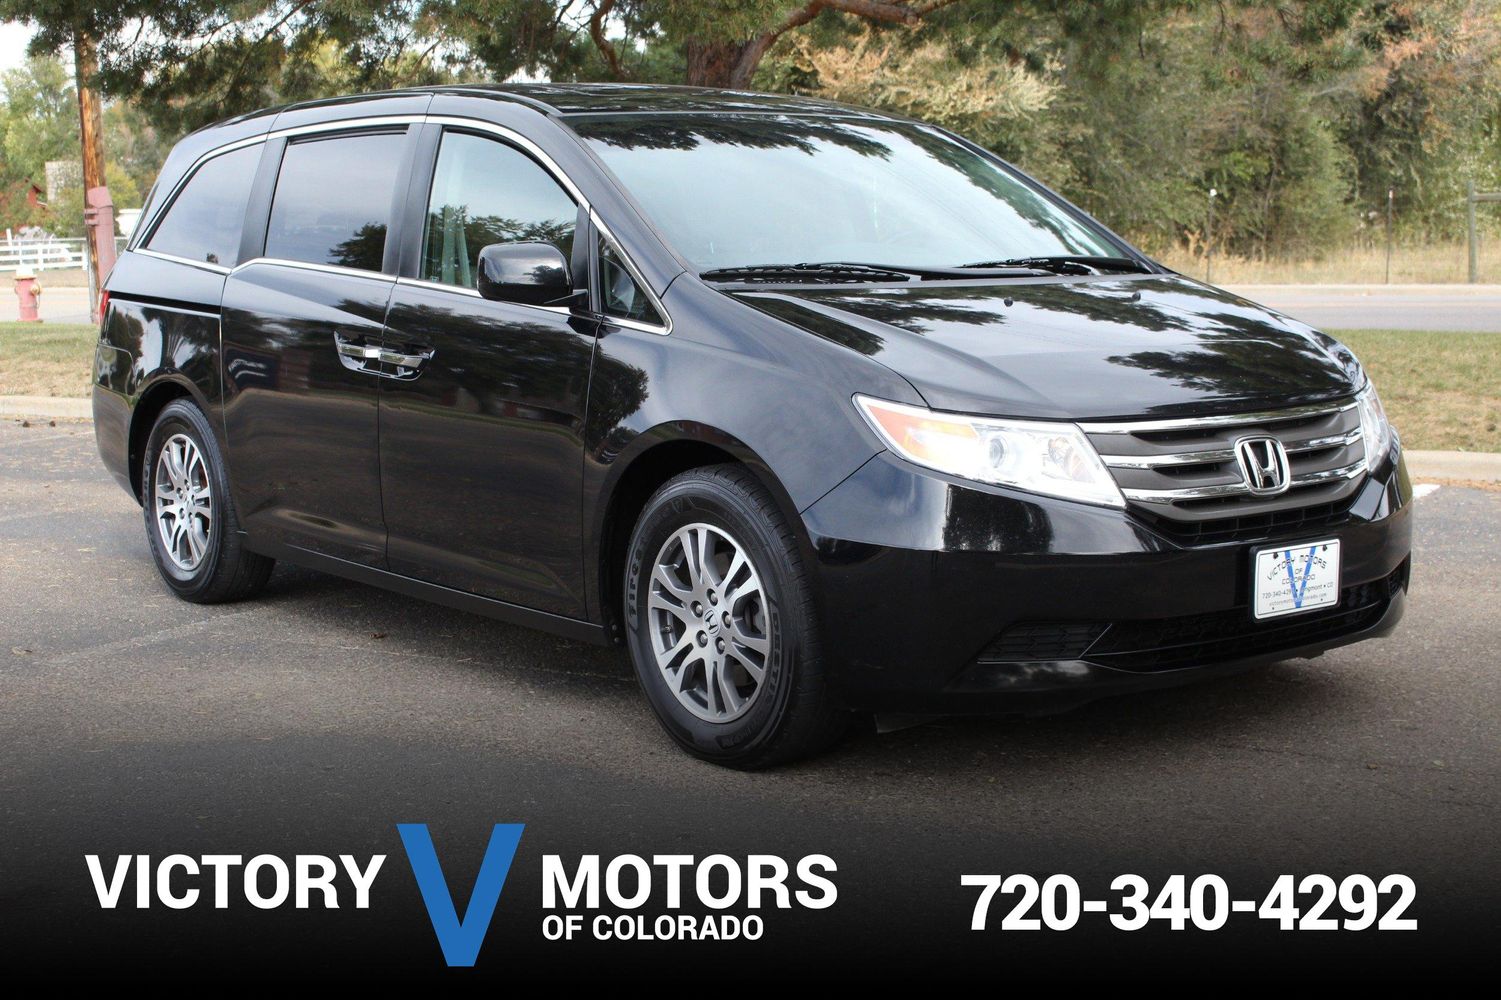 2012 Honda Odyssey EX-L | Victory Motors of Colorado